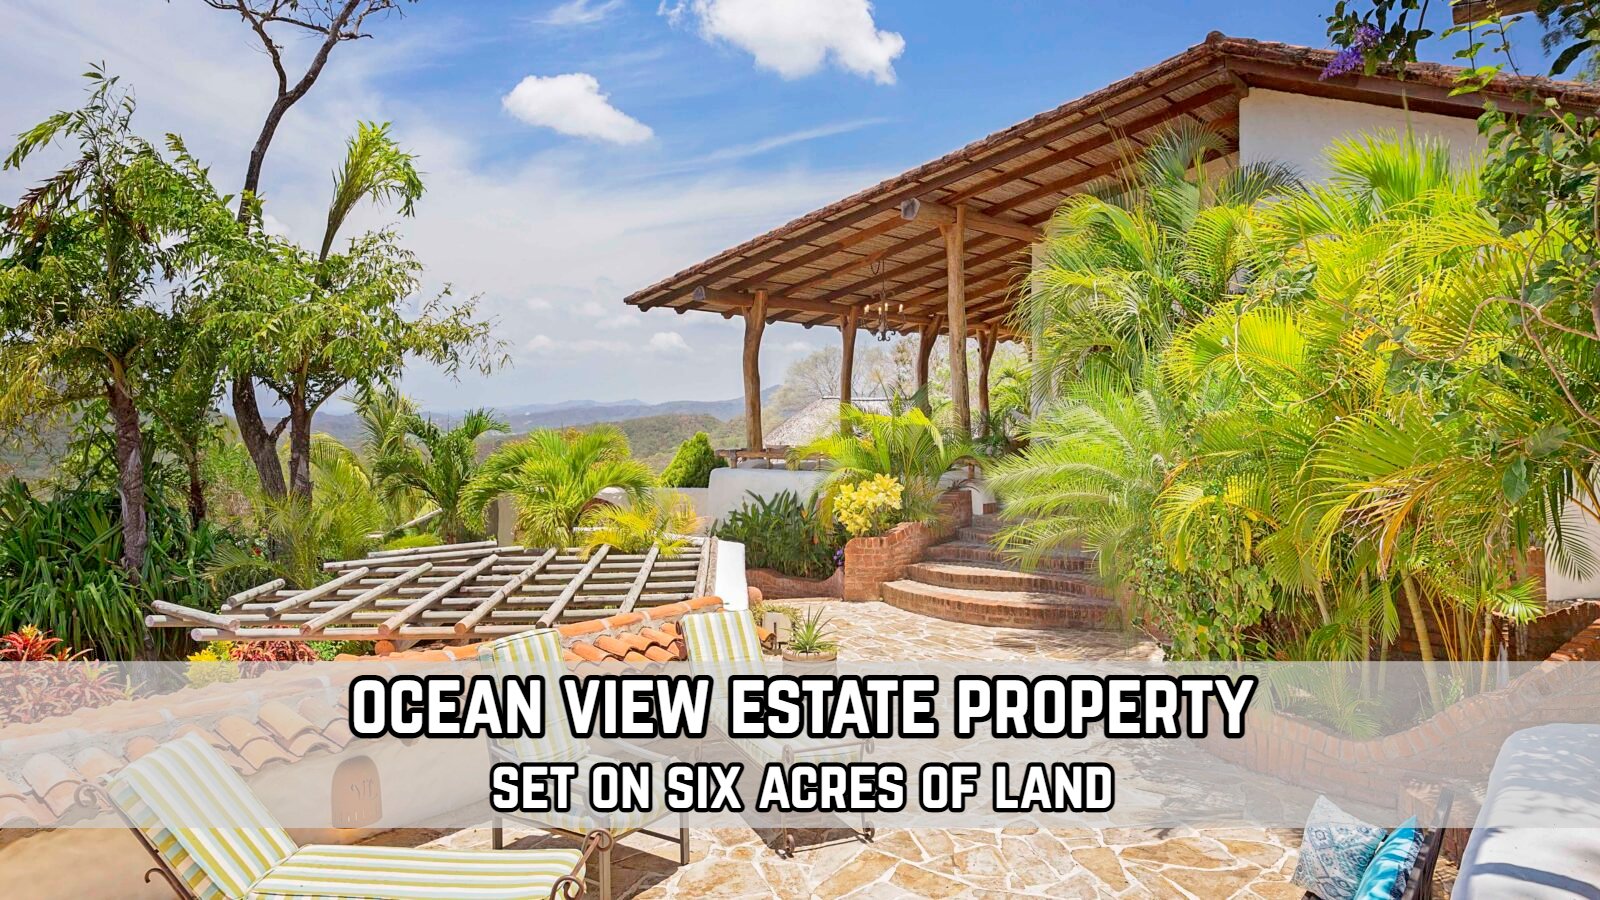 Real Estate Property Investment San Juan Del Sur Nicaragua Estate Luxury Webpage.jpg